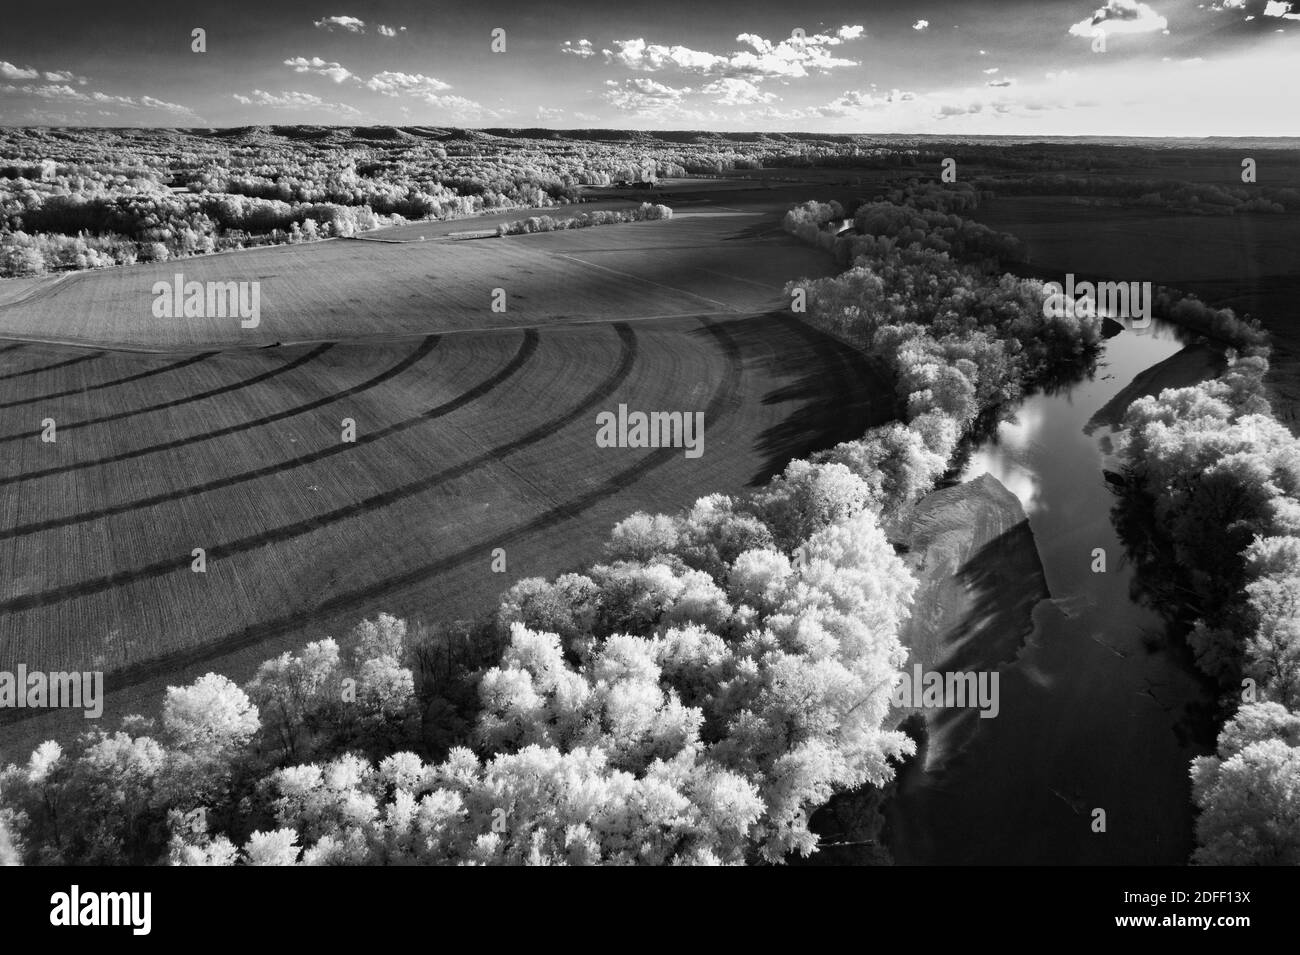 Eine Luftaufnahme von einem Feld mit einem Fluss, der von Bäumen gesäumt ist. Es gibt einige Halbkreise, die von den Reifen einer Feldbewässerung gebildet werden. Stockfoto